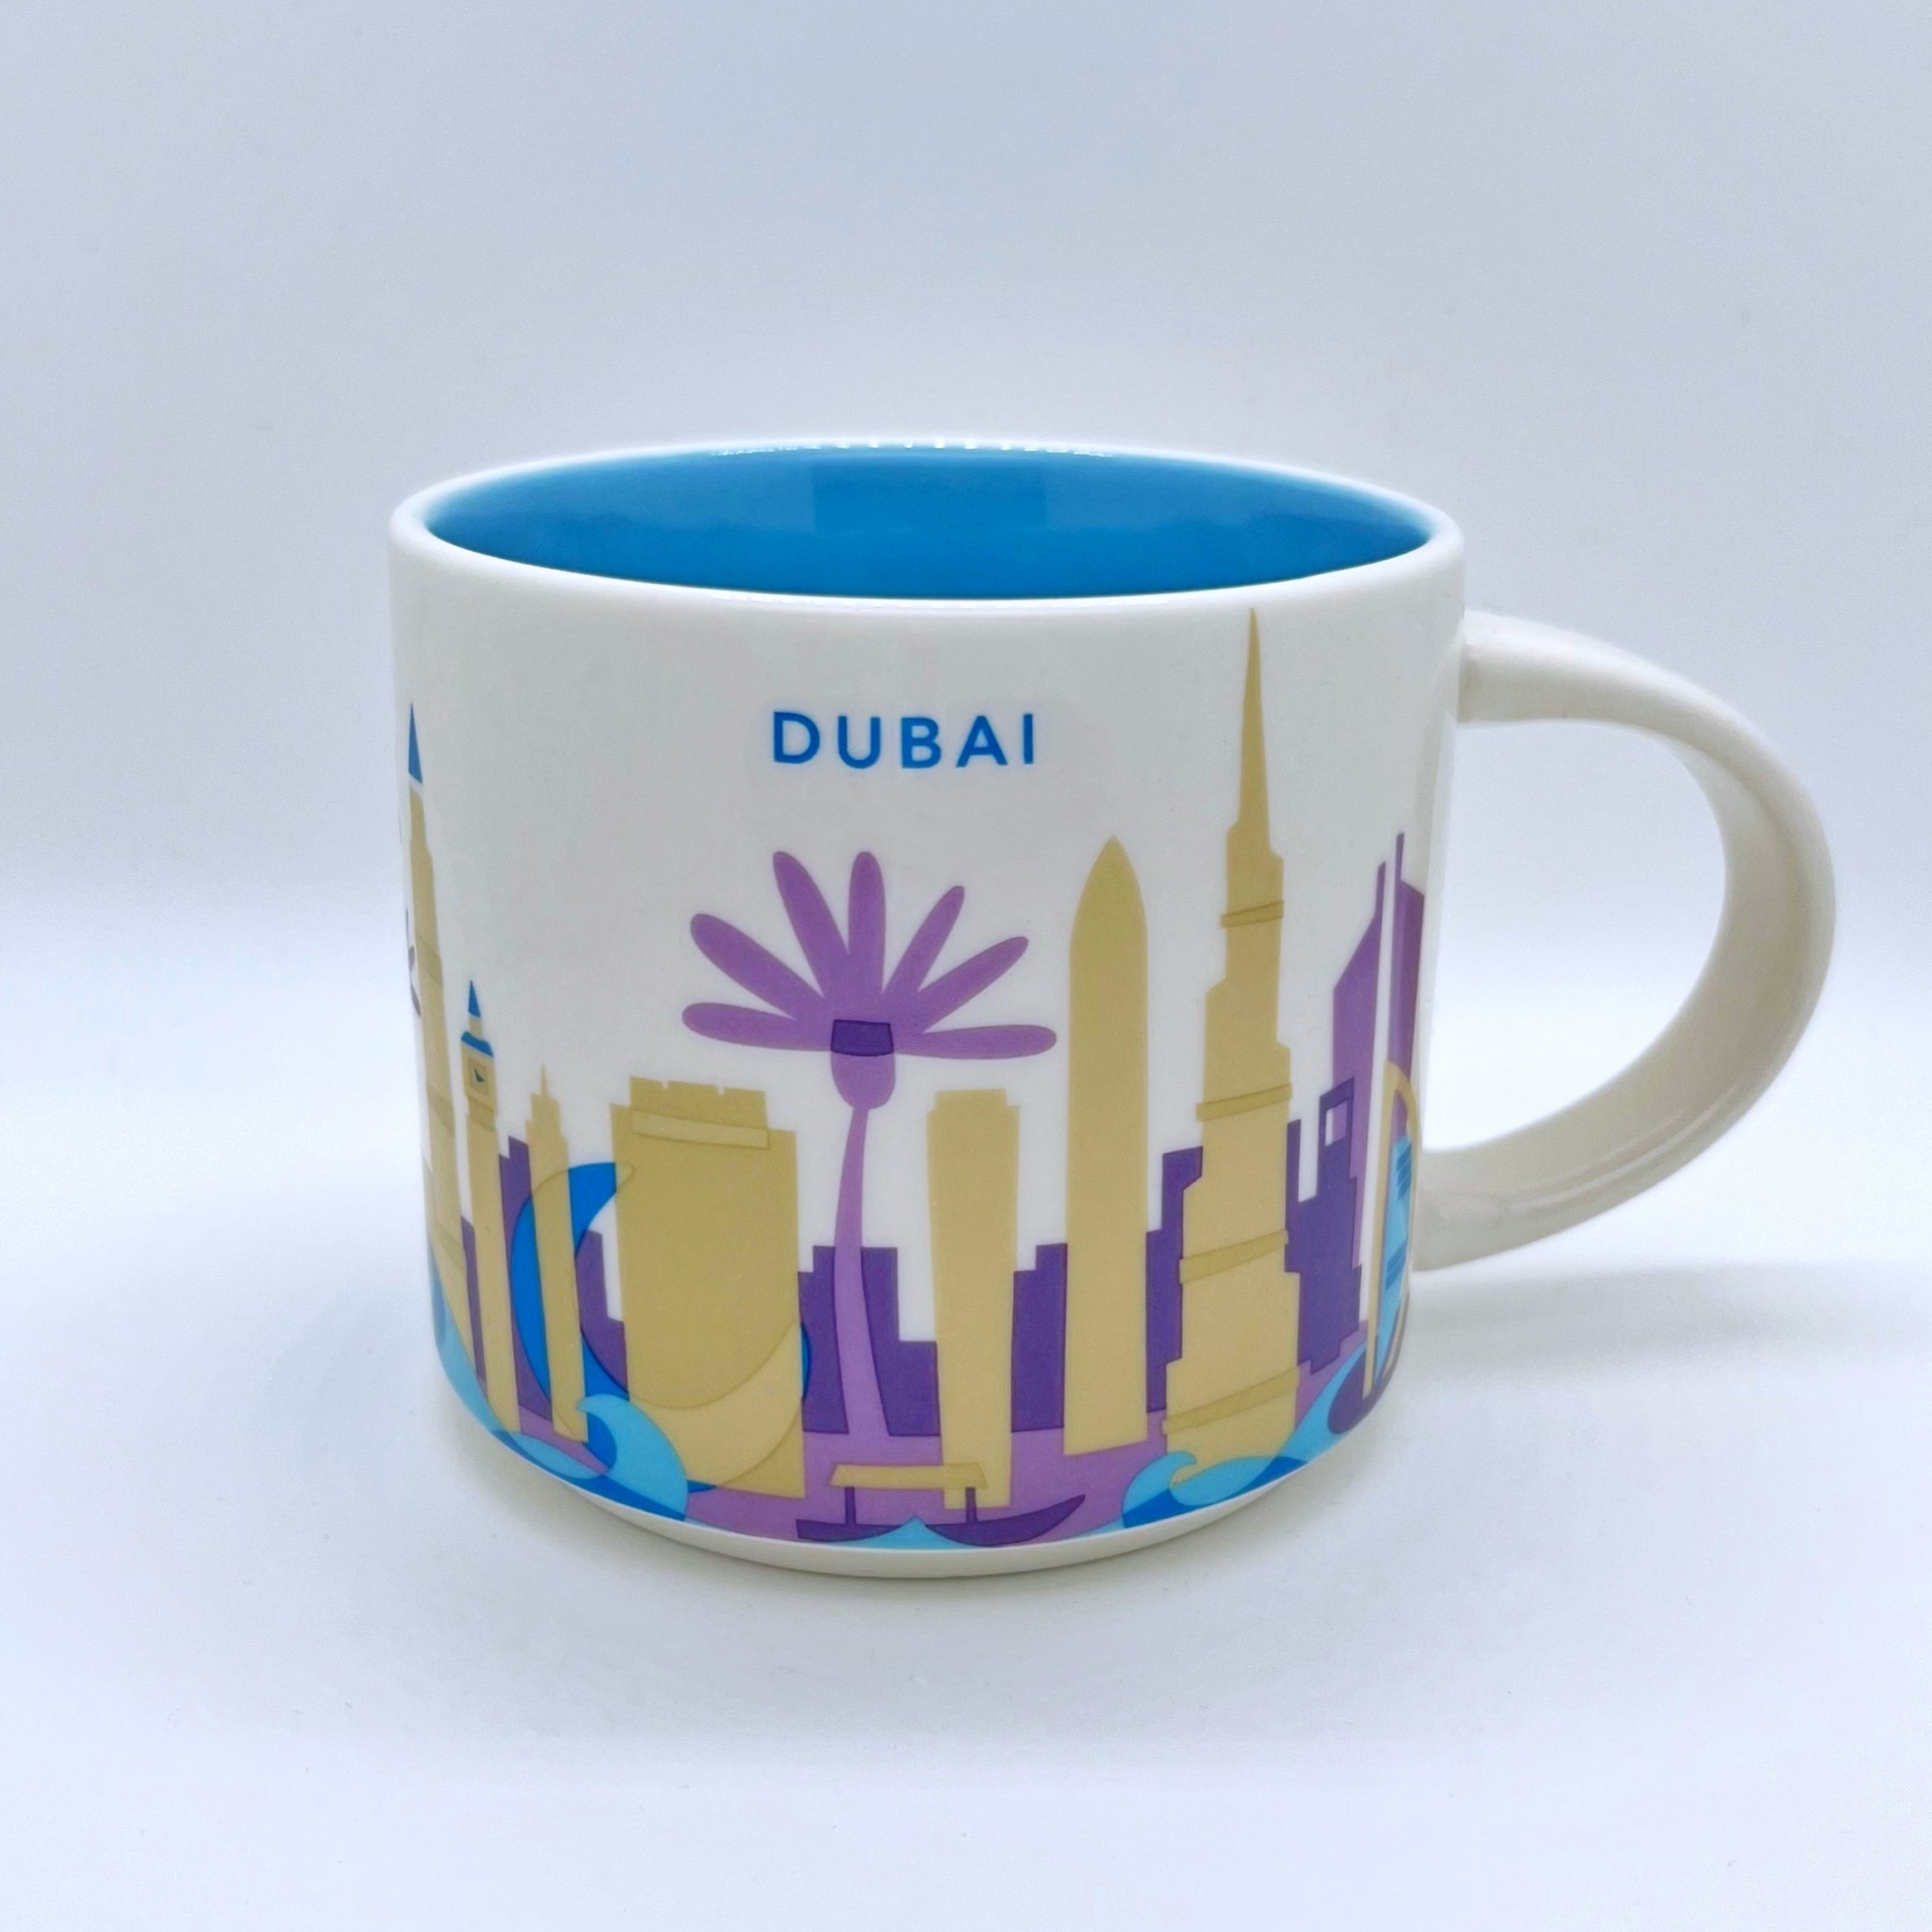 Kaffee Tee und Cappuccino Tasse von Starbucks mit gemalten Bildern aus der Stadt Dubai